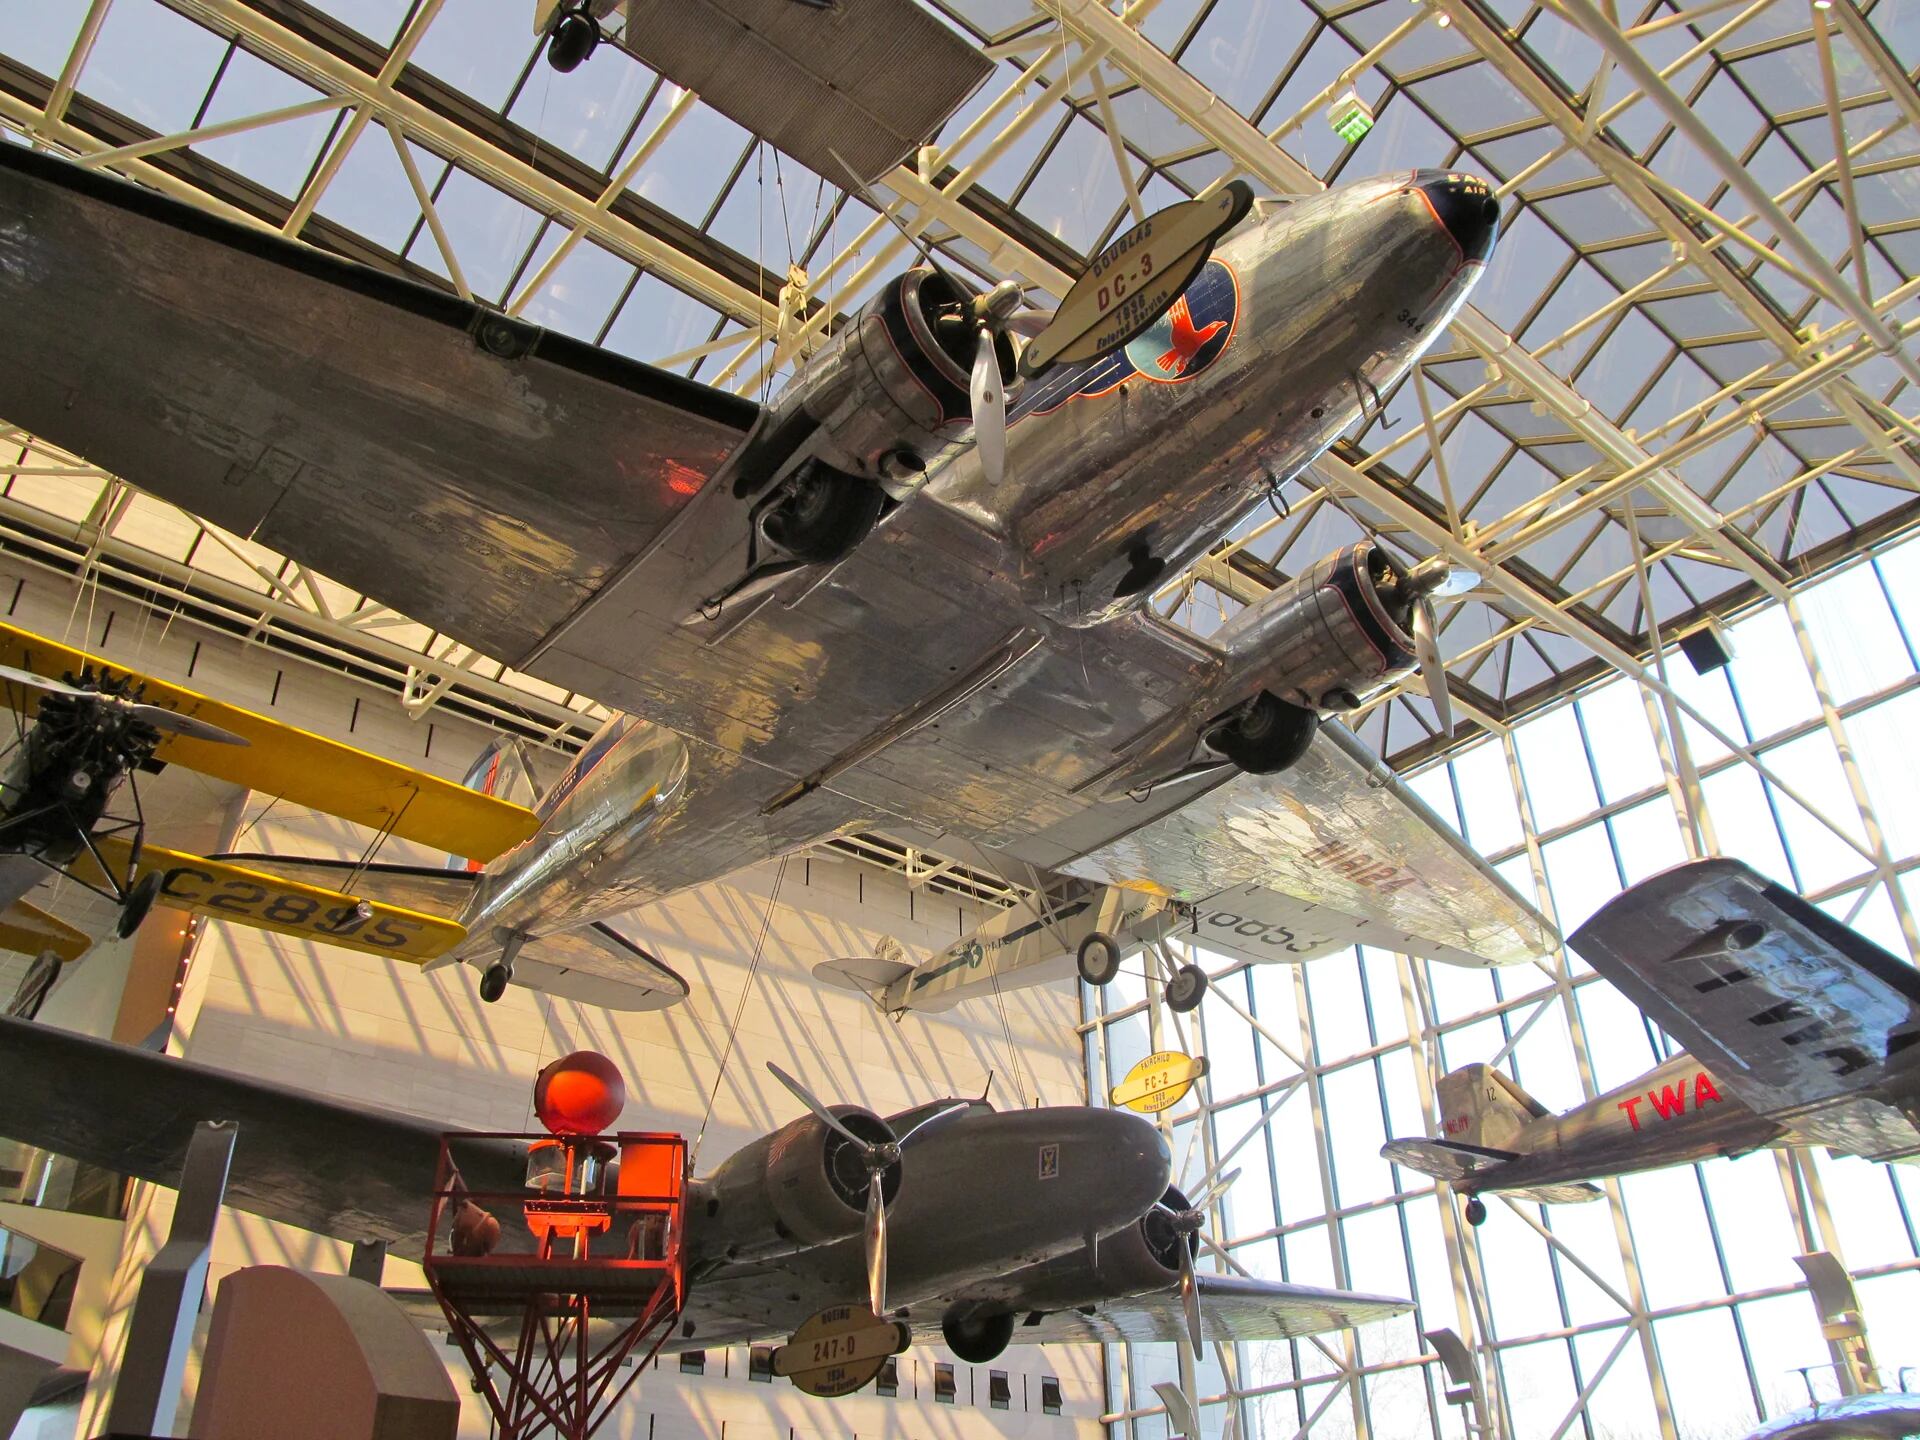 Esta maravilla permite ver muestras de las principales naves que protagonizaron la historia de la aviación y la conquista del espacio